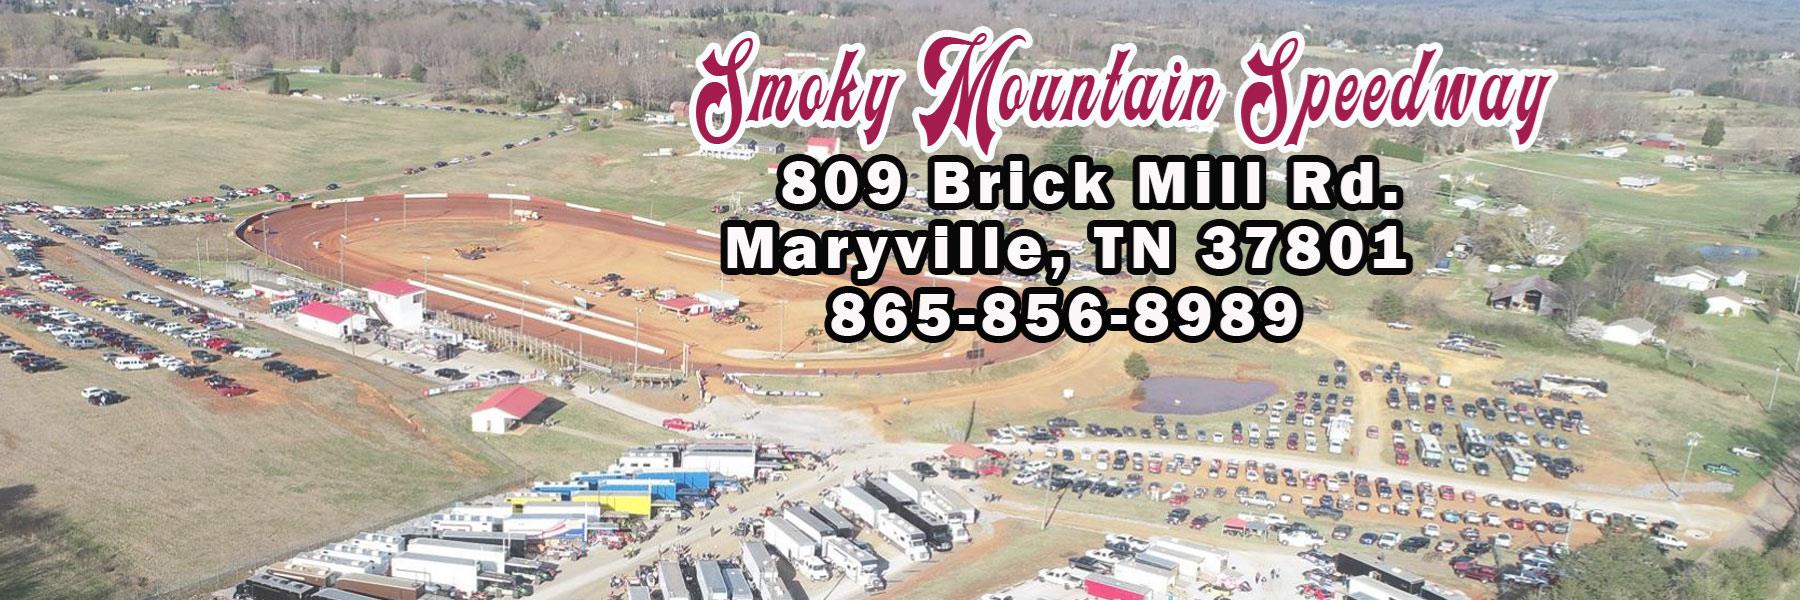 7/9/2021 - Smoky Mountain Speedway